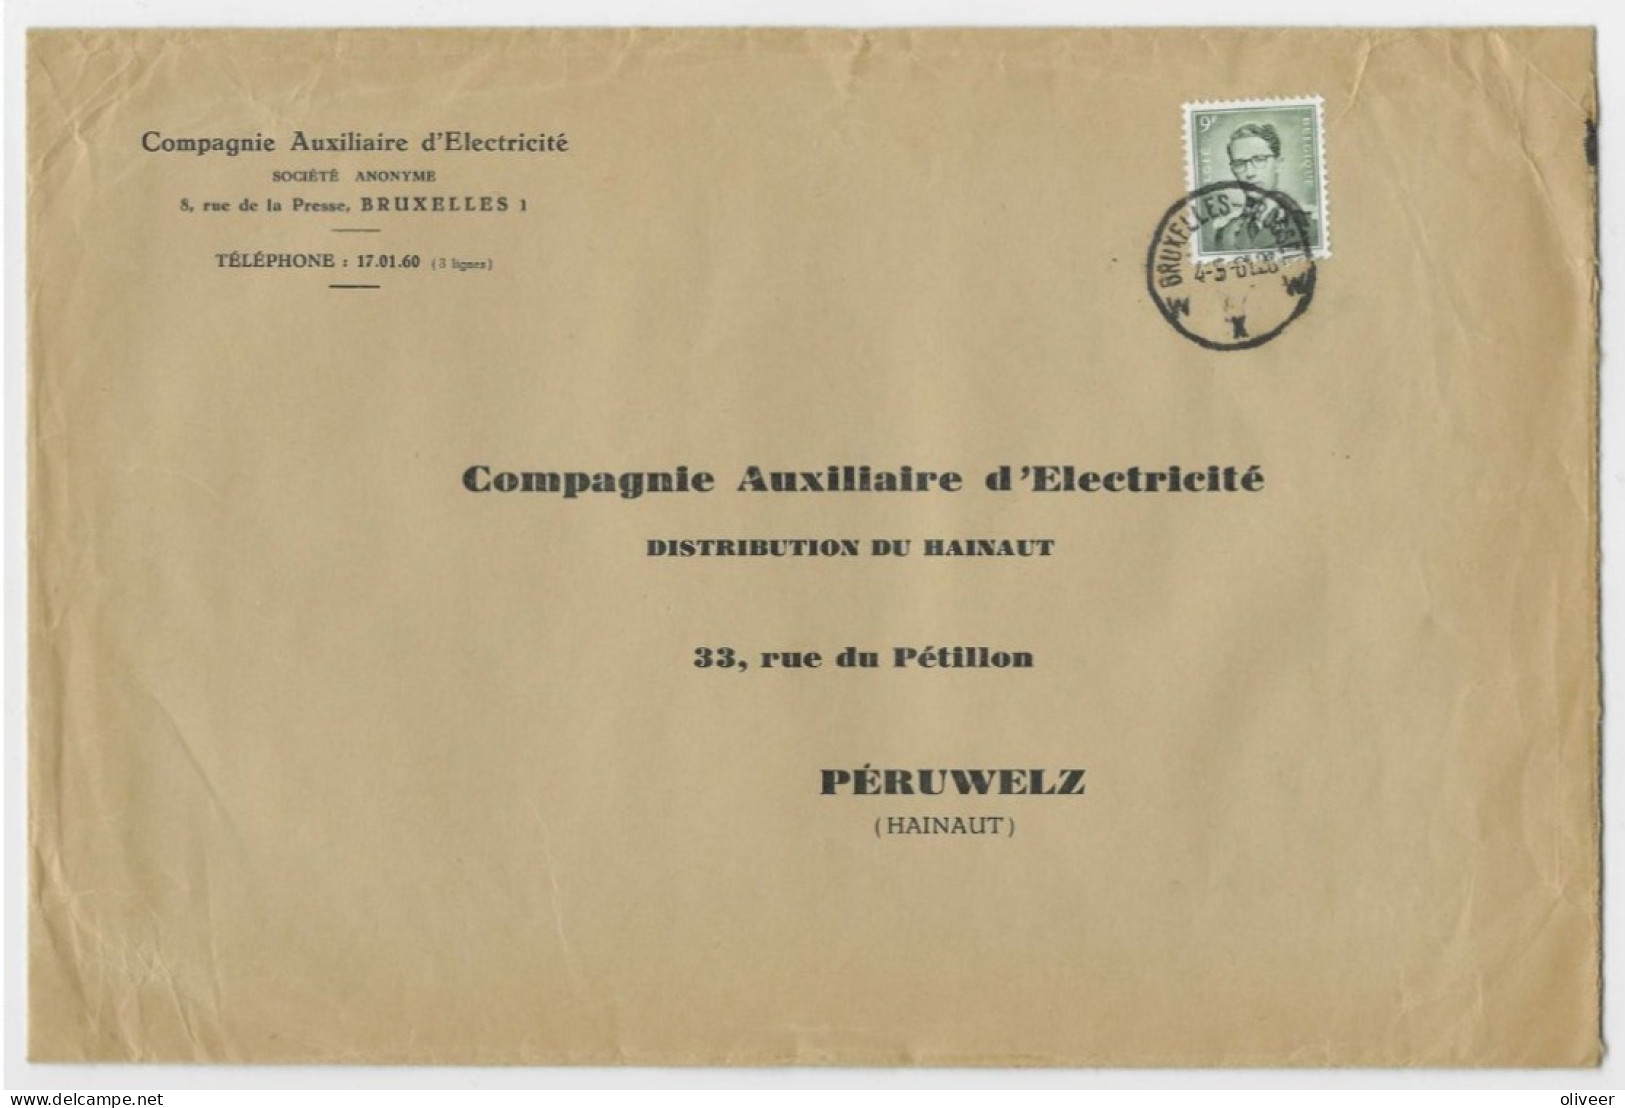 OCB 1073 Boudewijn Marchand 9fr. Op Brief Groot Formaat - Drievoudig Briefport. - 1953-1972 Bril